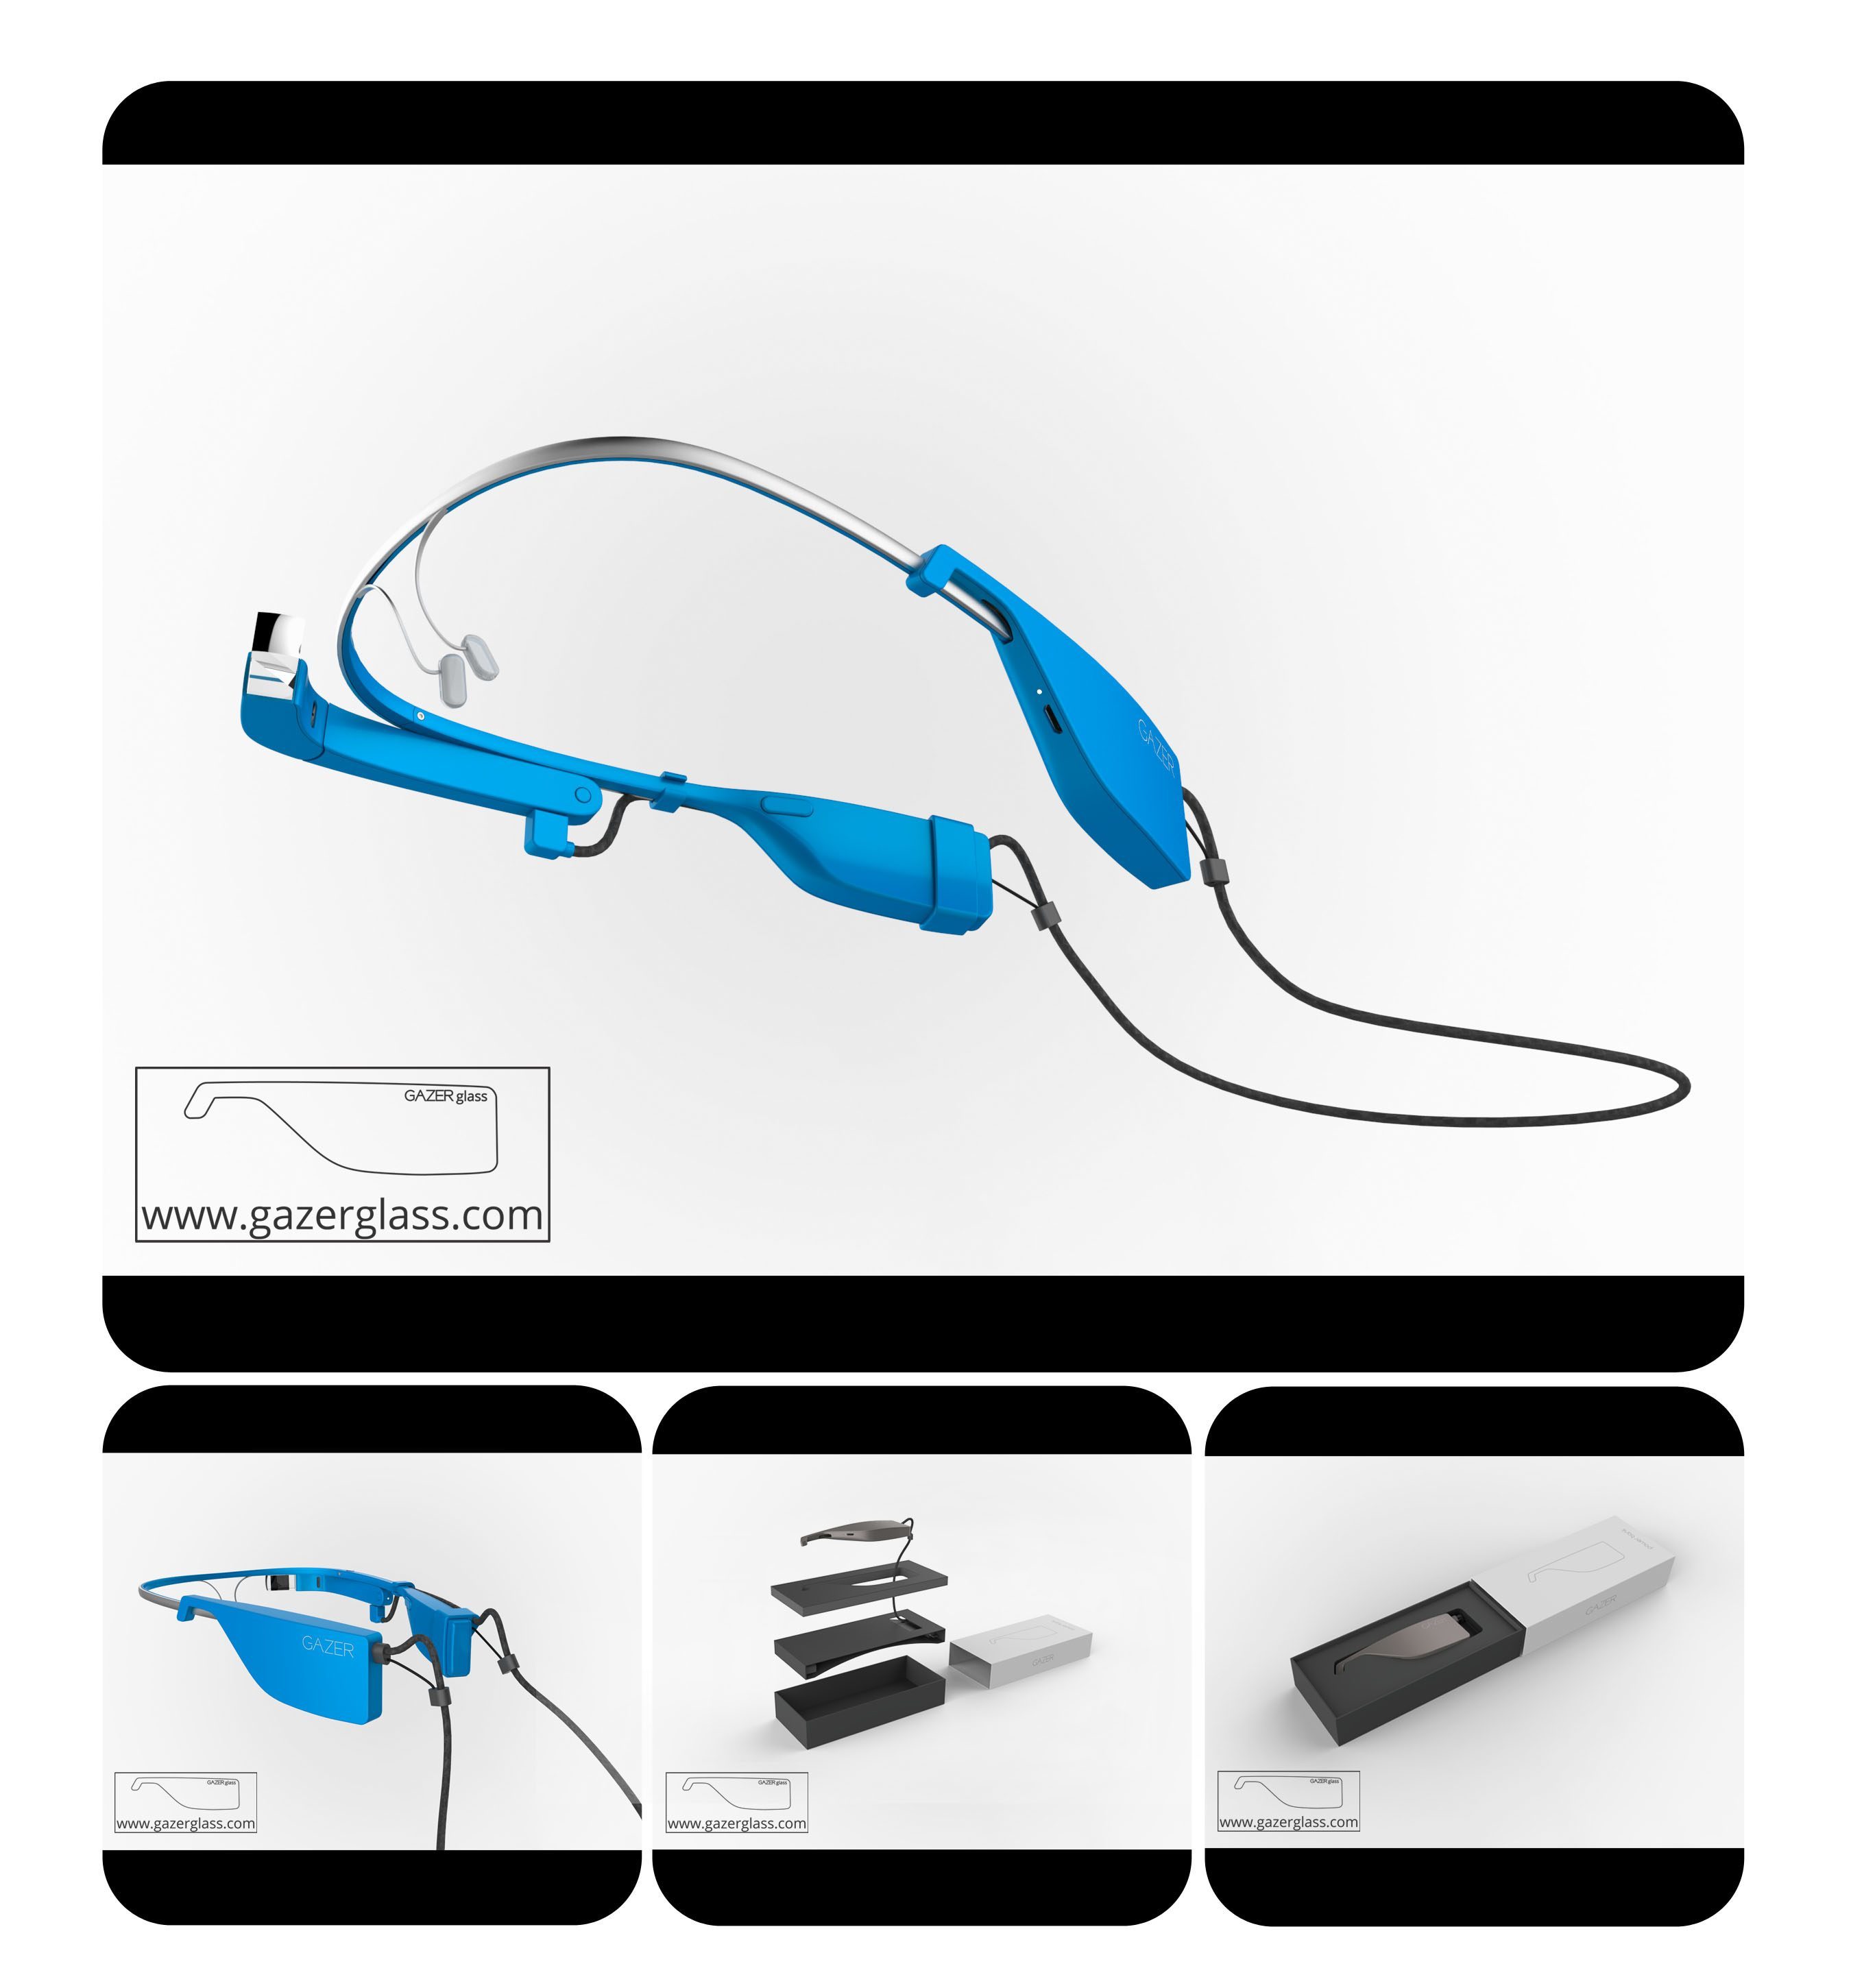 GAZERglass Power Bank Battery for Google Glass